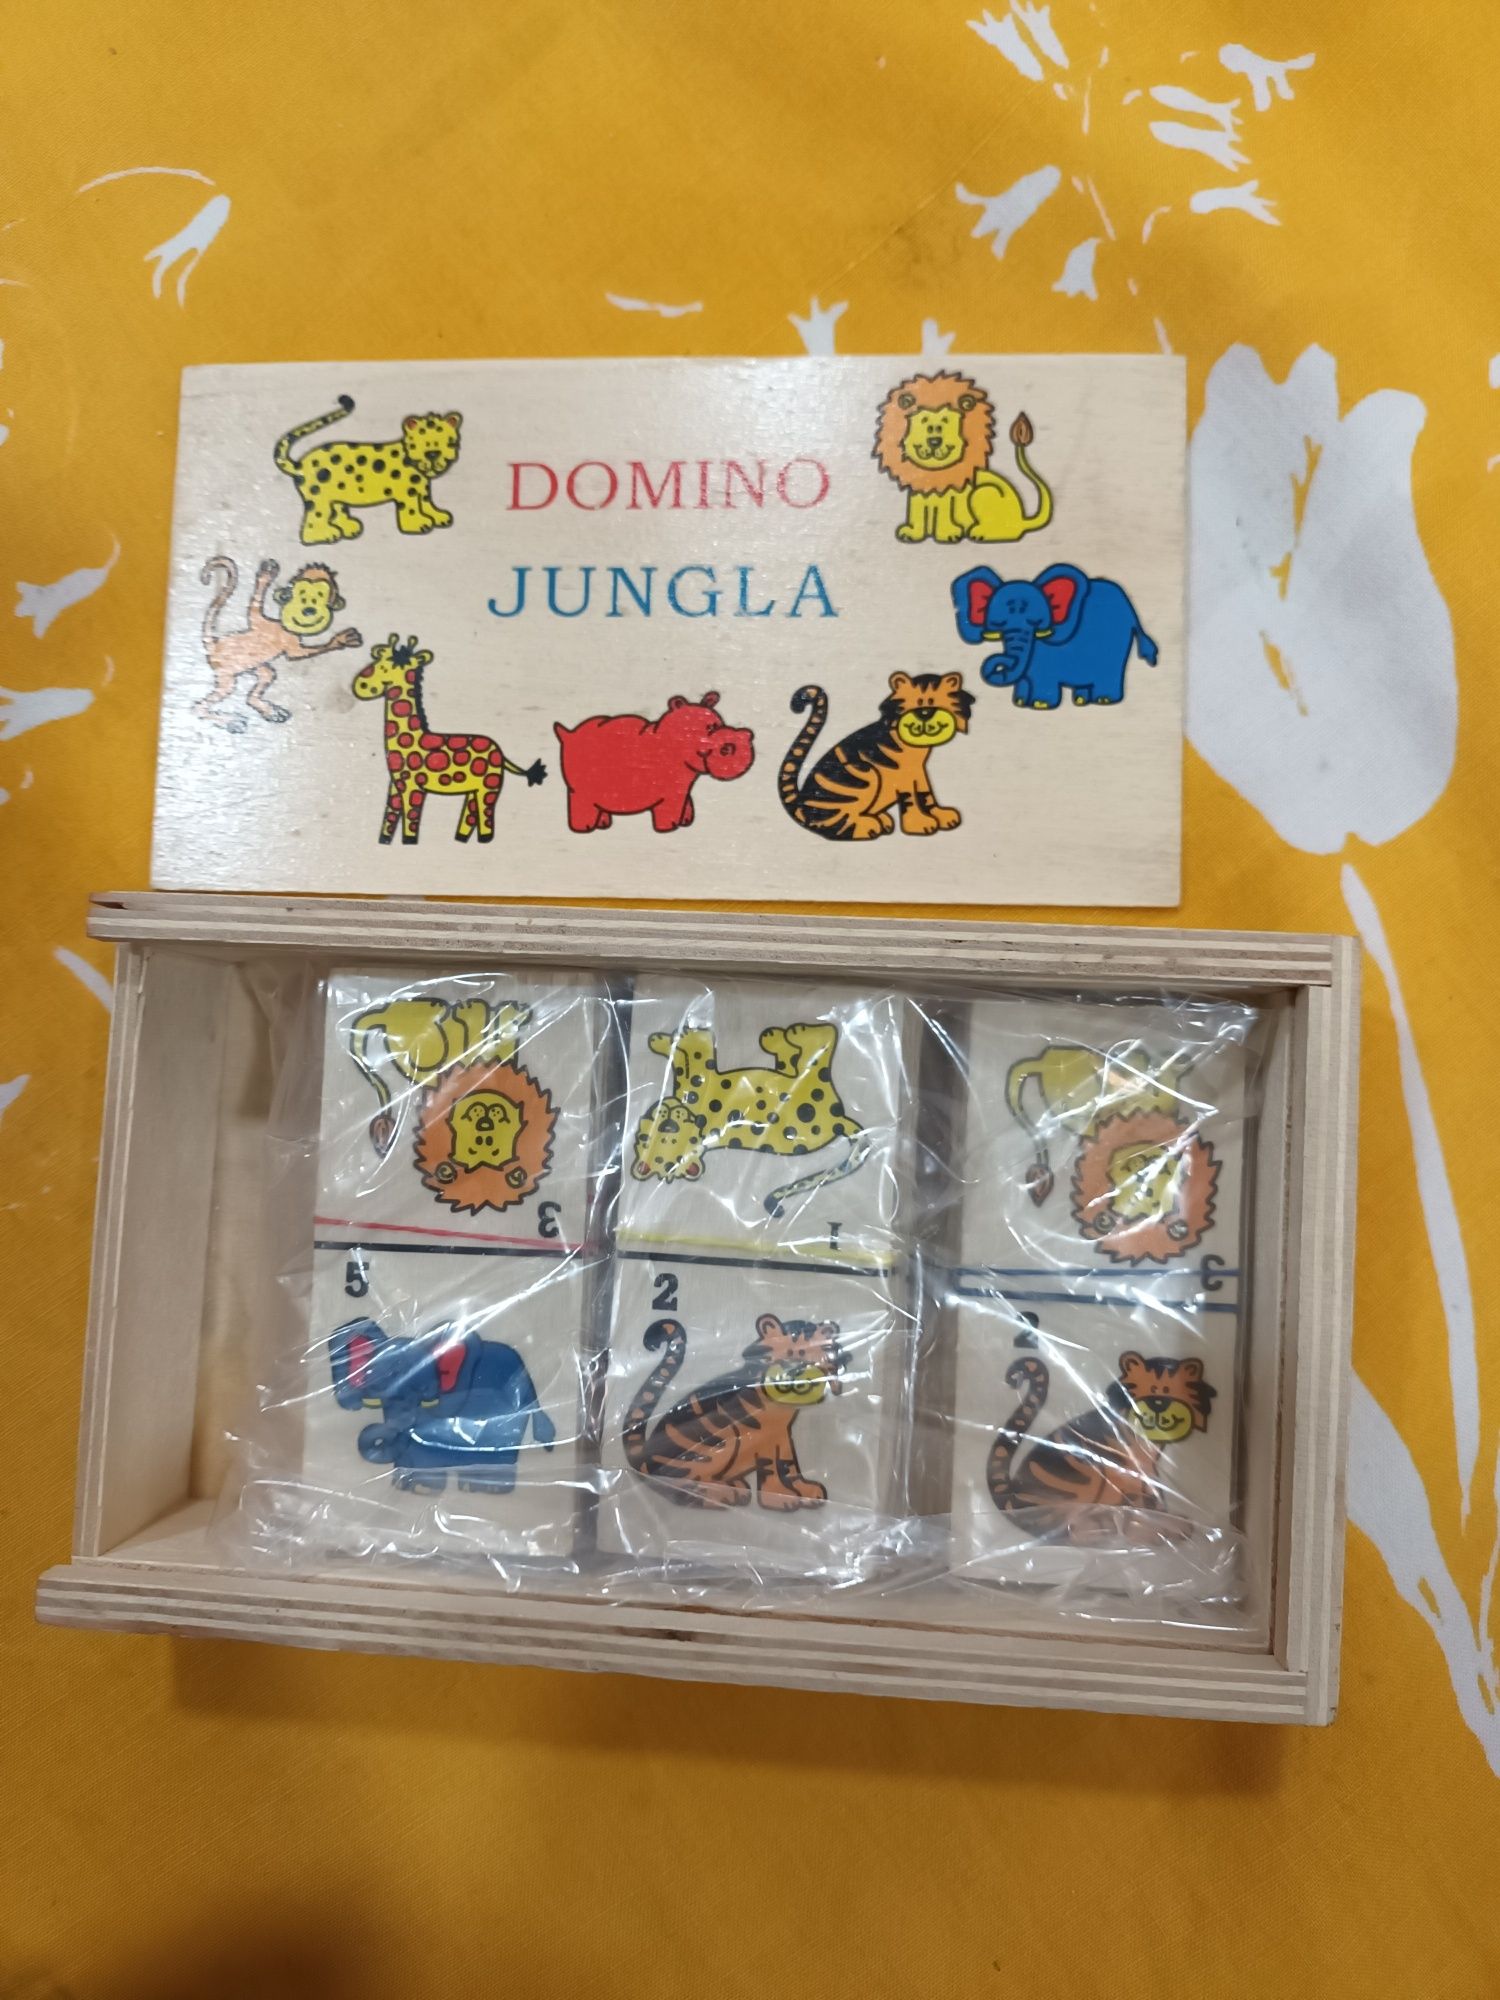 5€ caixa de dominó  e madeira jungla